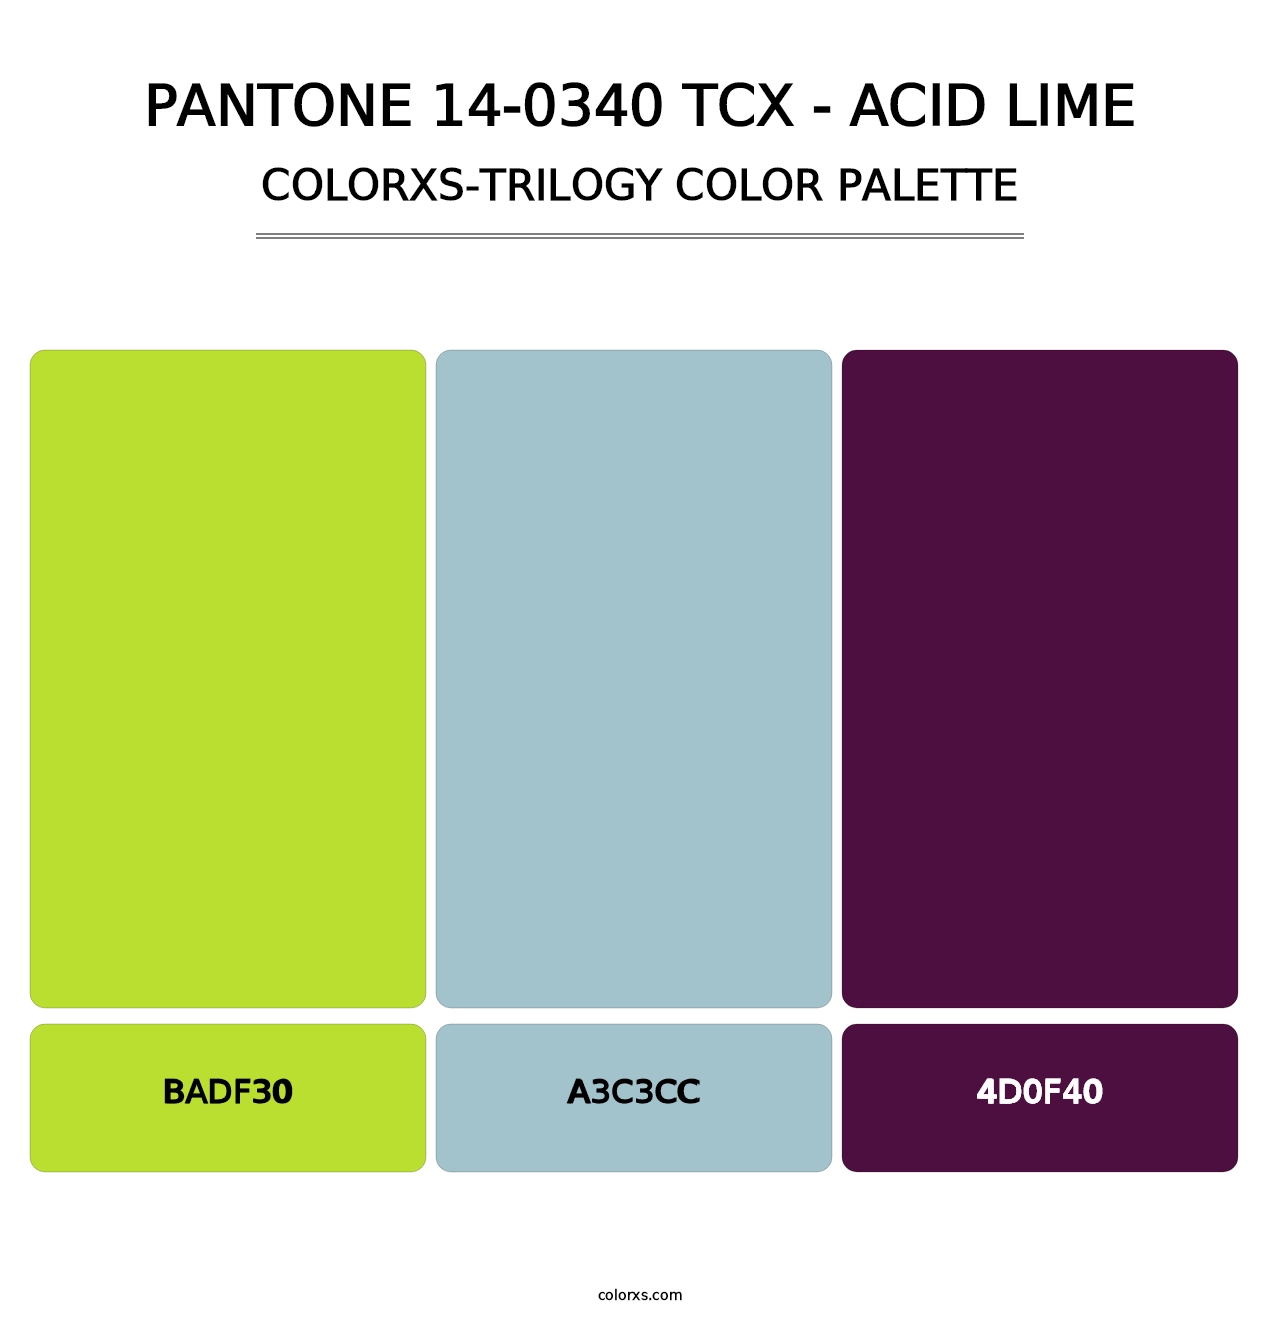 PANTONE 14-0340 TCX - Acid Lime - Colorxs Trilogy Palette